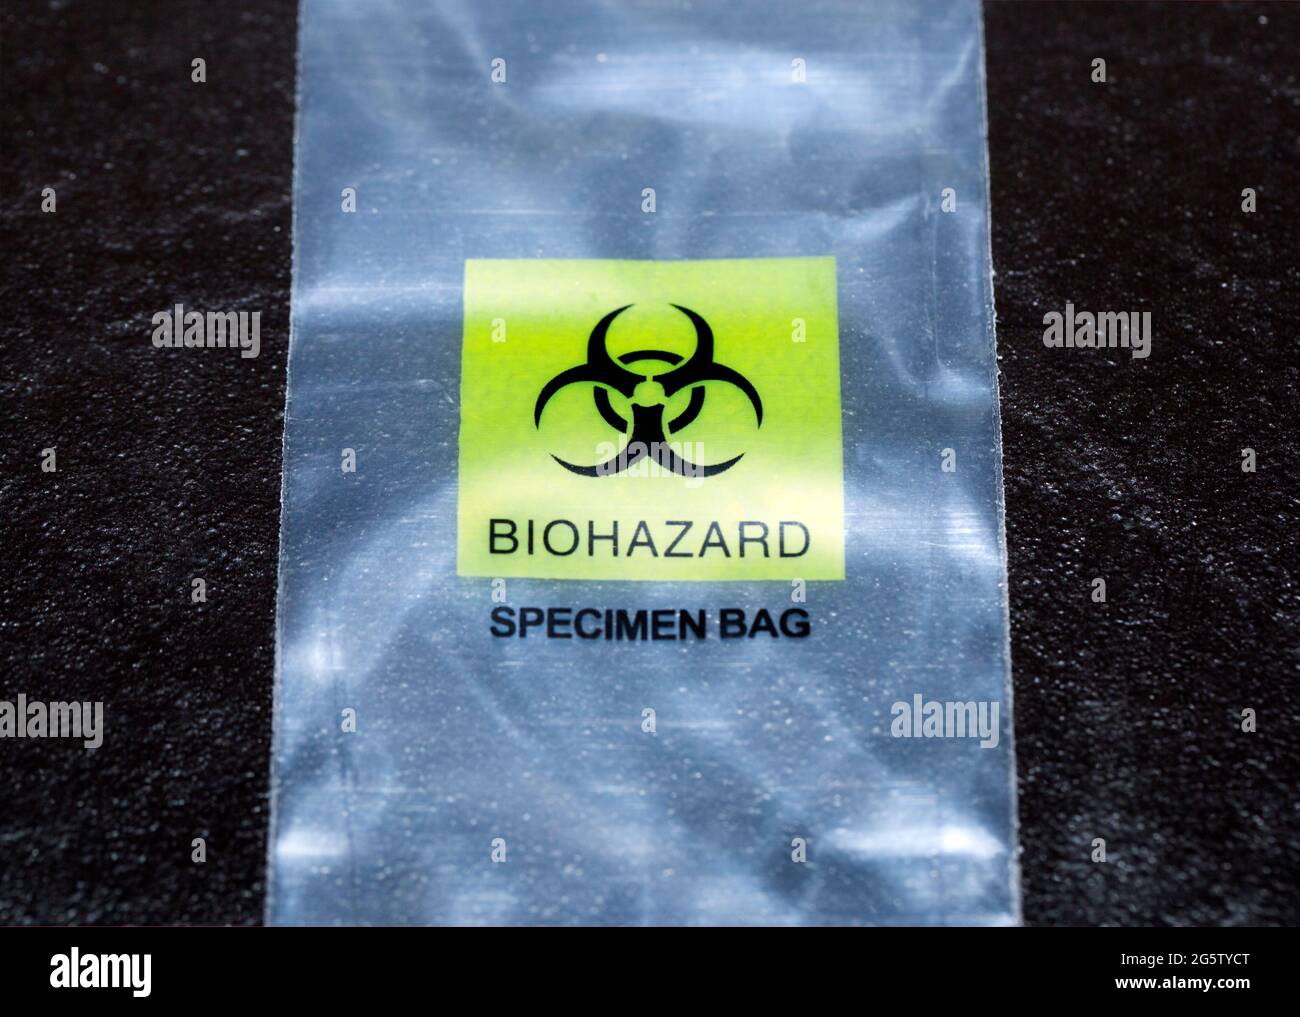 Biohazard, specimen bag Stock Photo